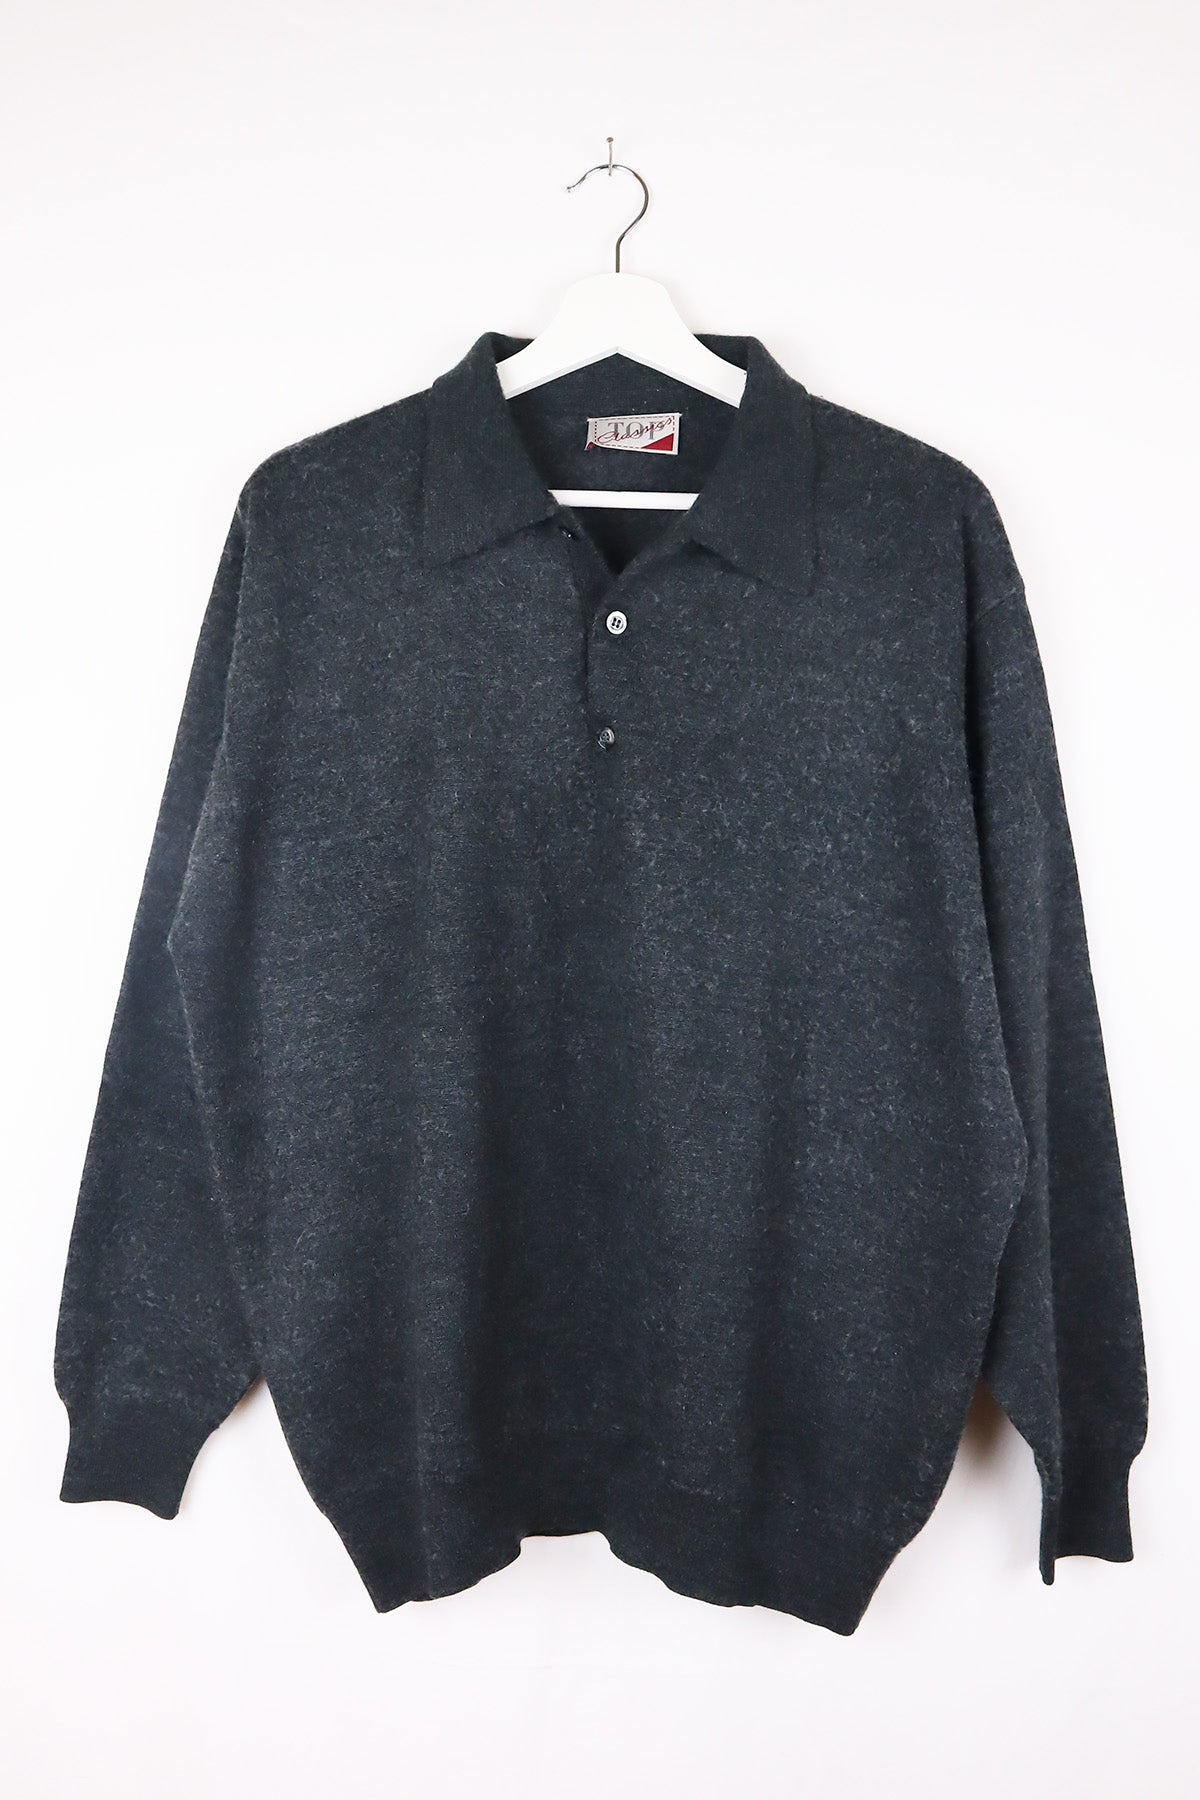 Basic Pullover Vintage Dunkelgrau ( Gr. L )